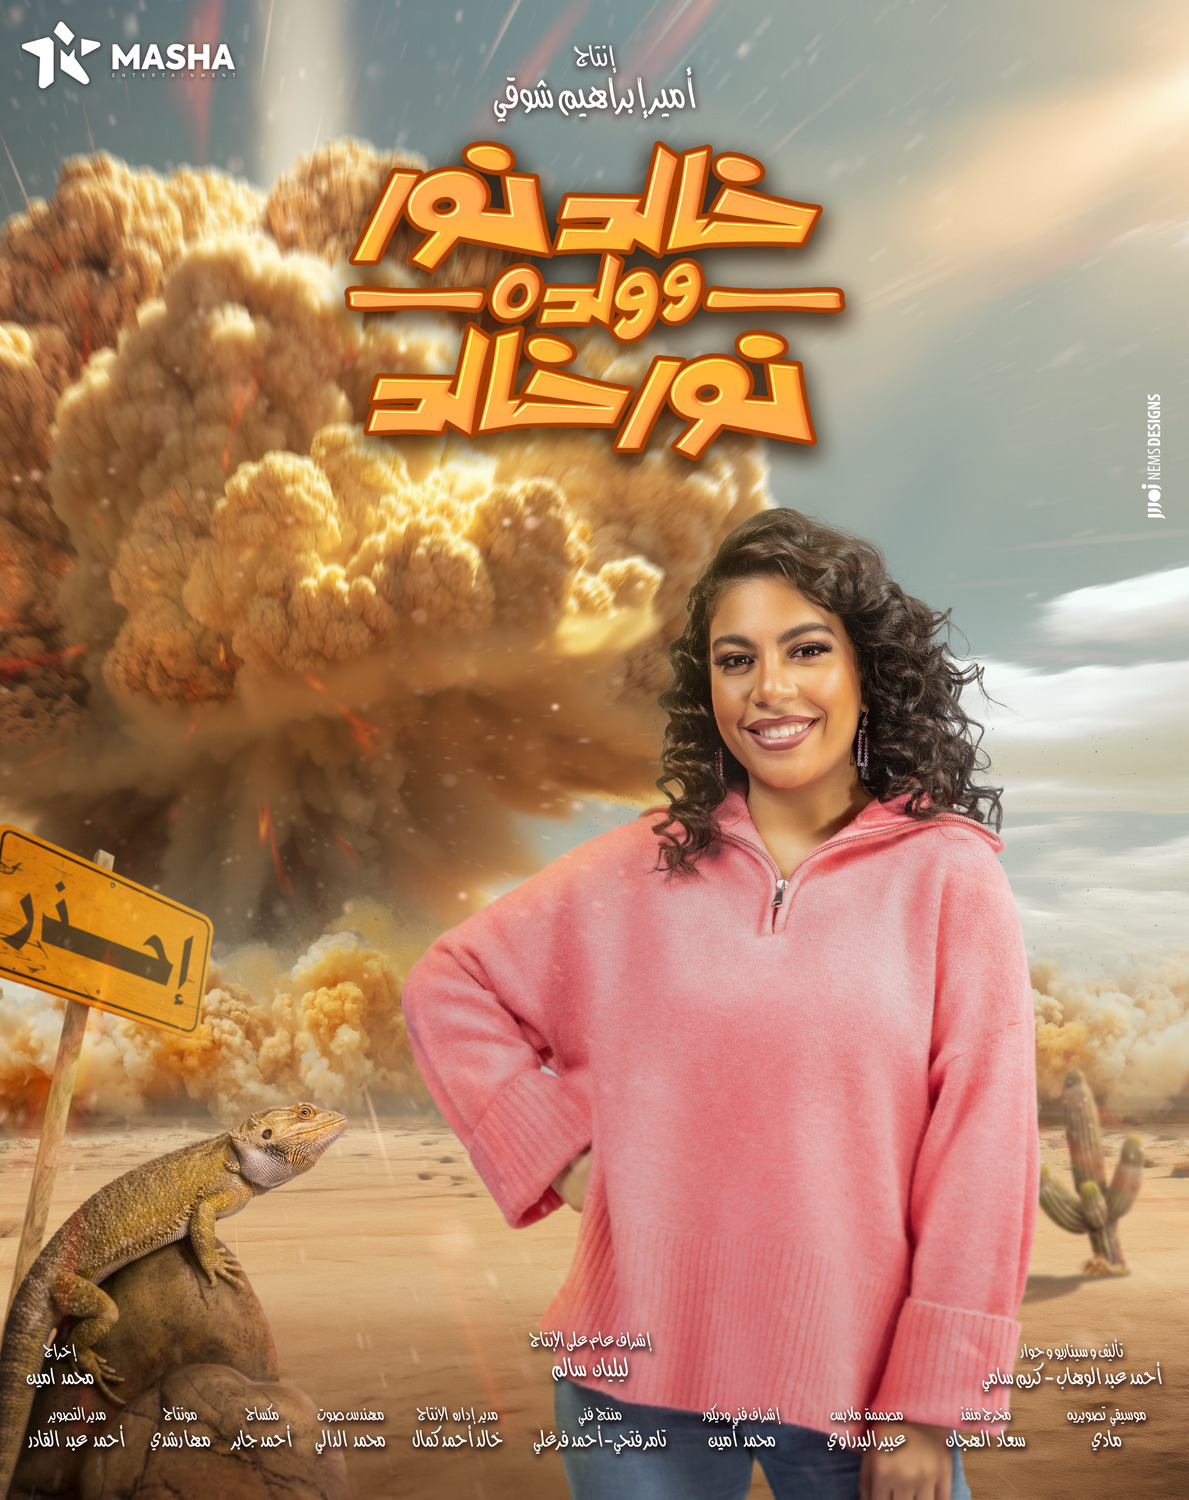 Extra Large TV Poster Image for Khaled Noor W Waldo Noor Khaled (#10 of 13)